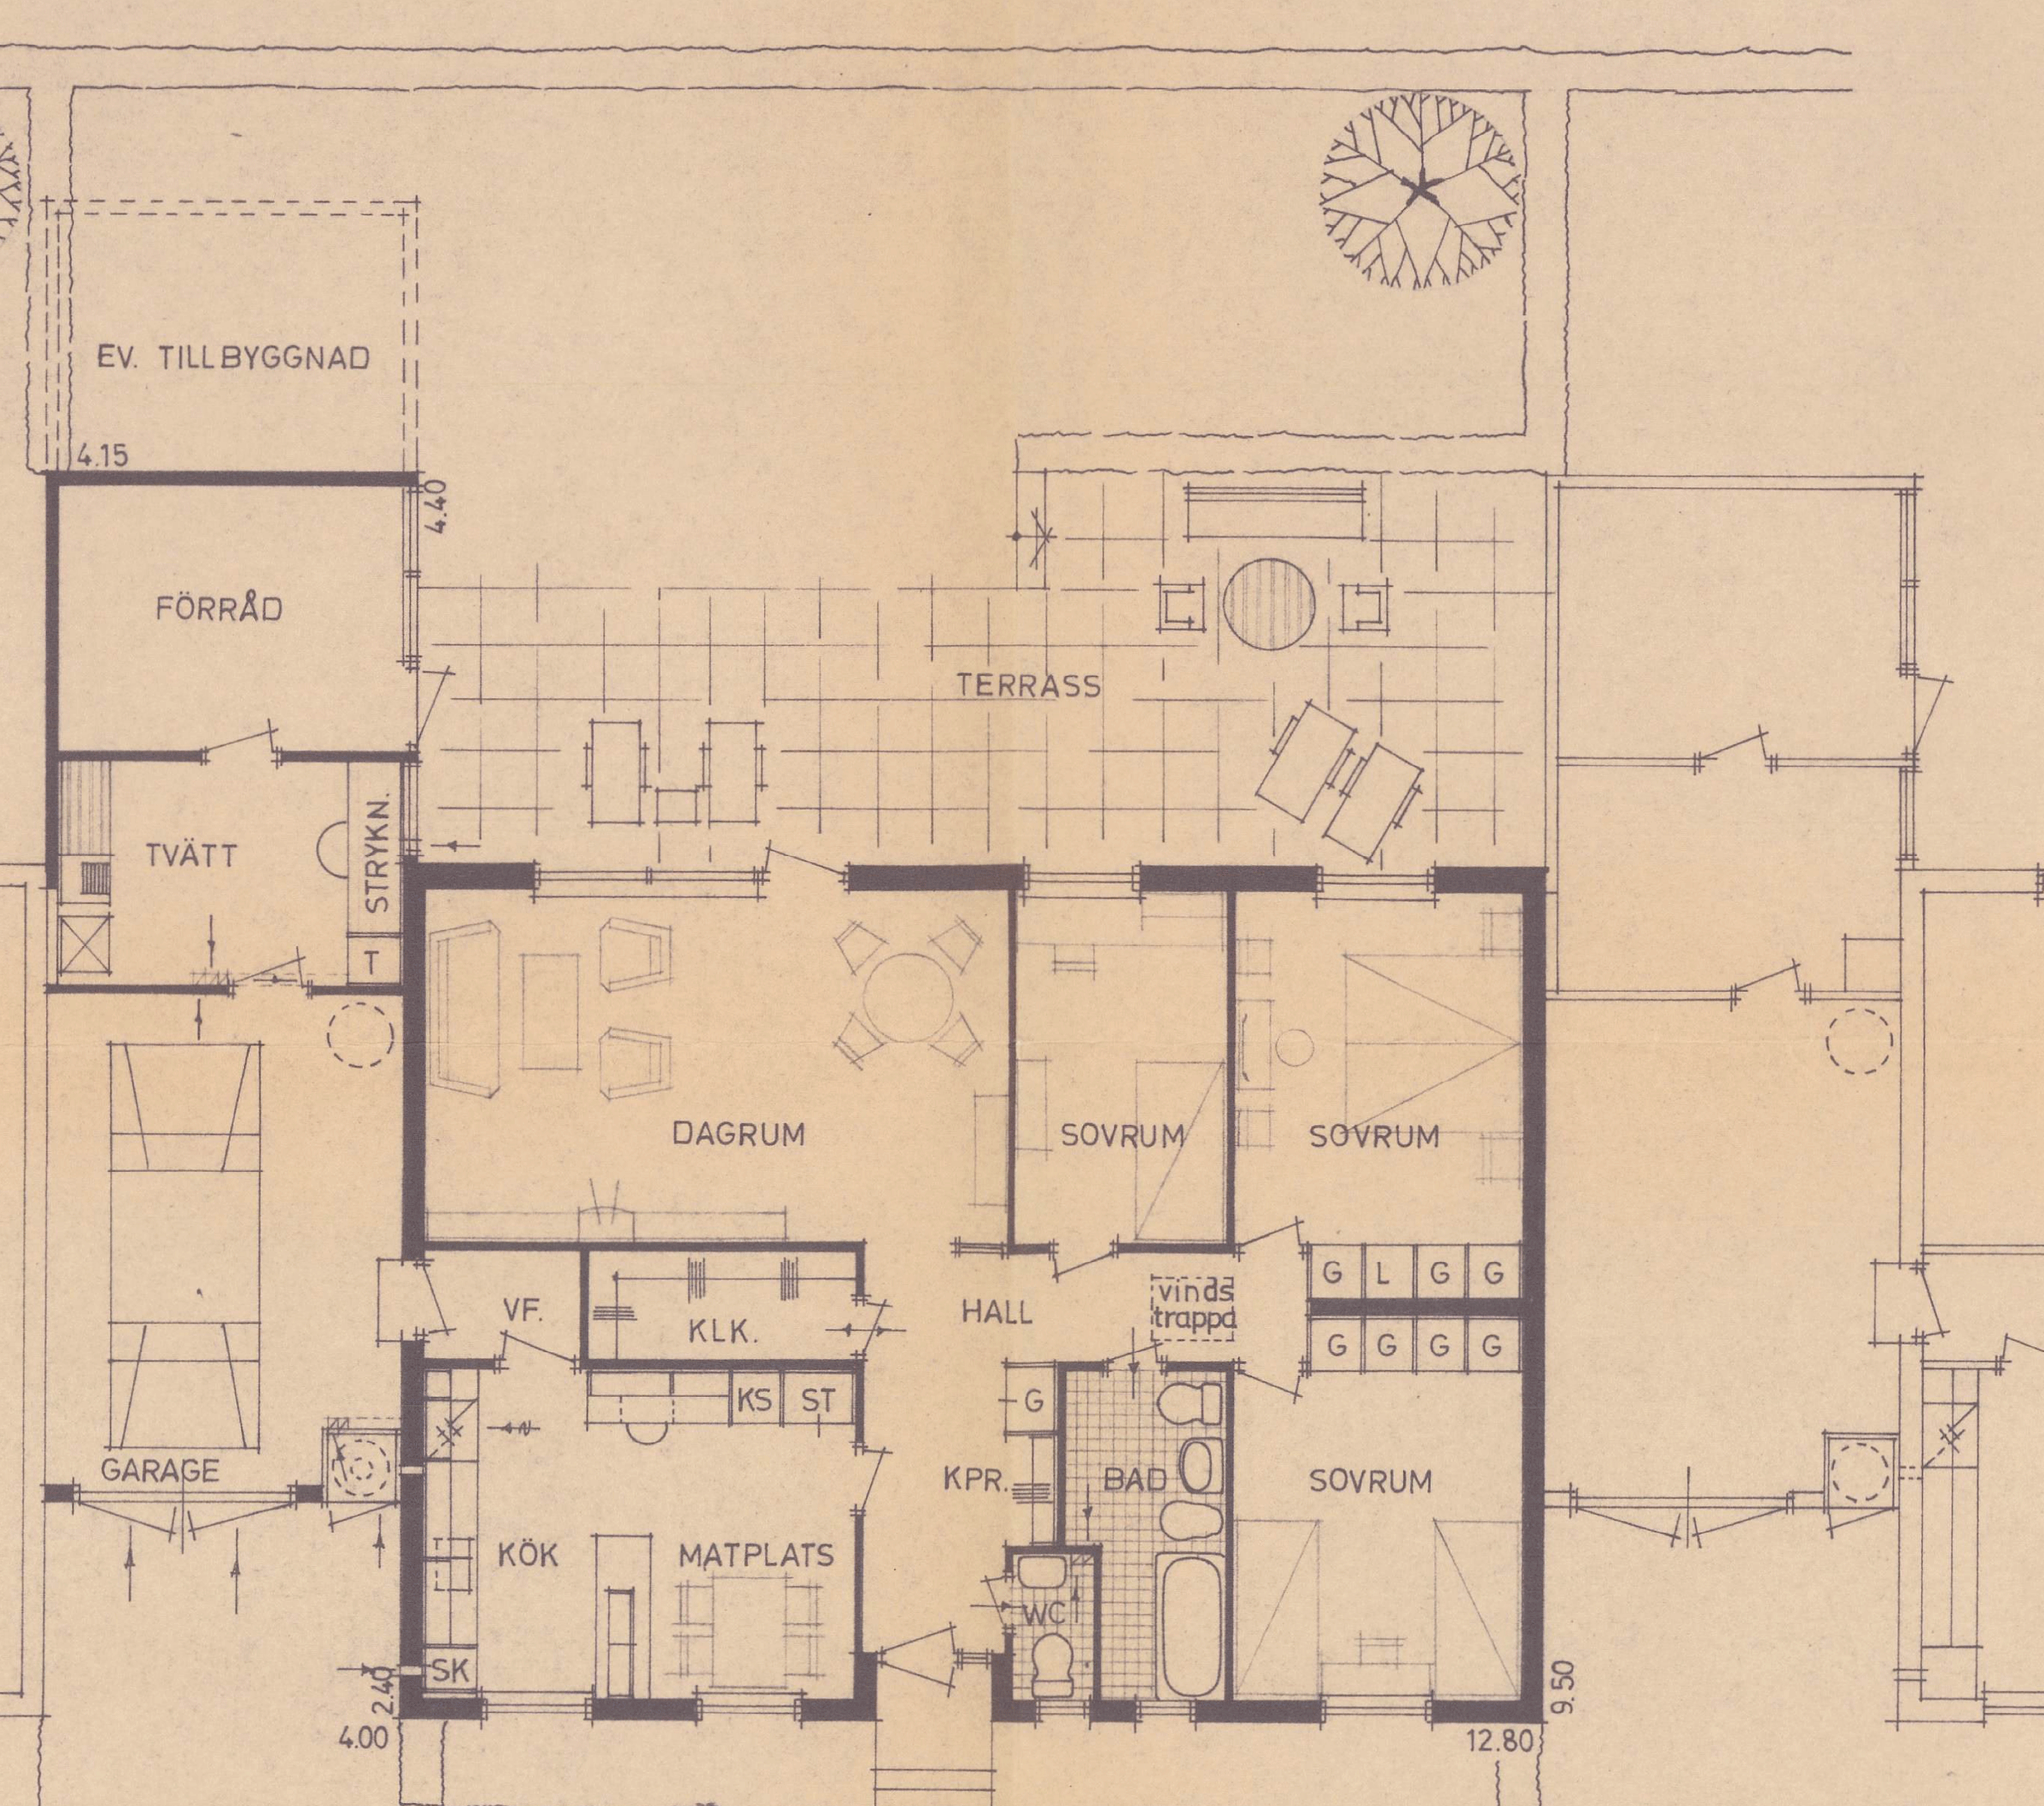 Arkitektritning av en 1 ½-plansvilla som visar planlösningen inklusive vardagsrum, kök, badrum, och sovrum anslutna till en central hall.